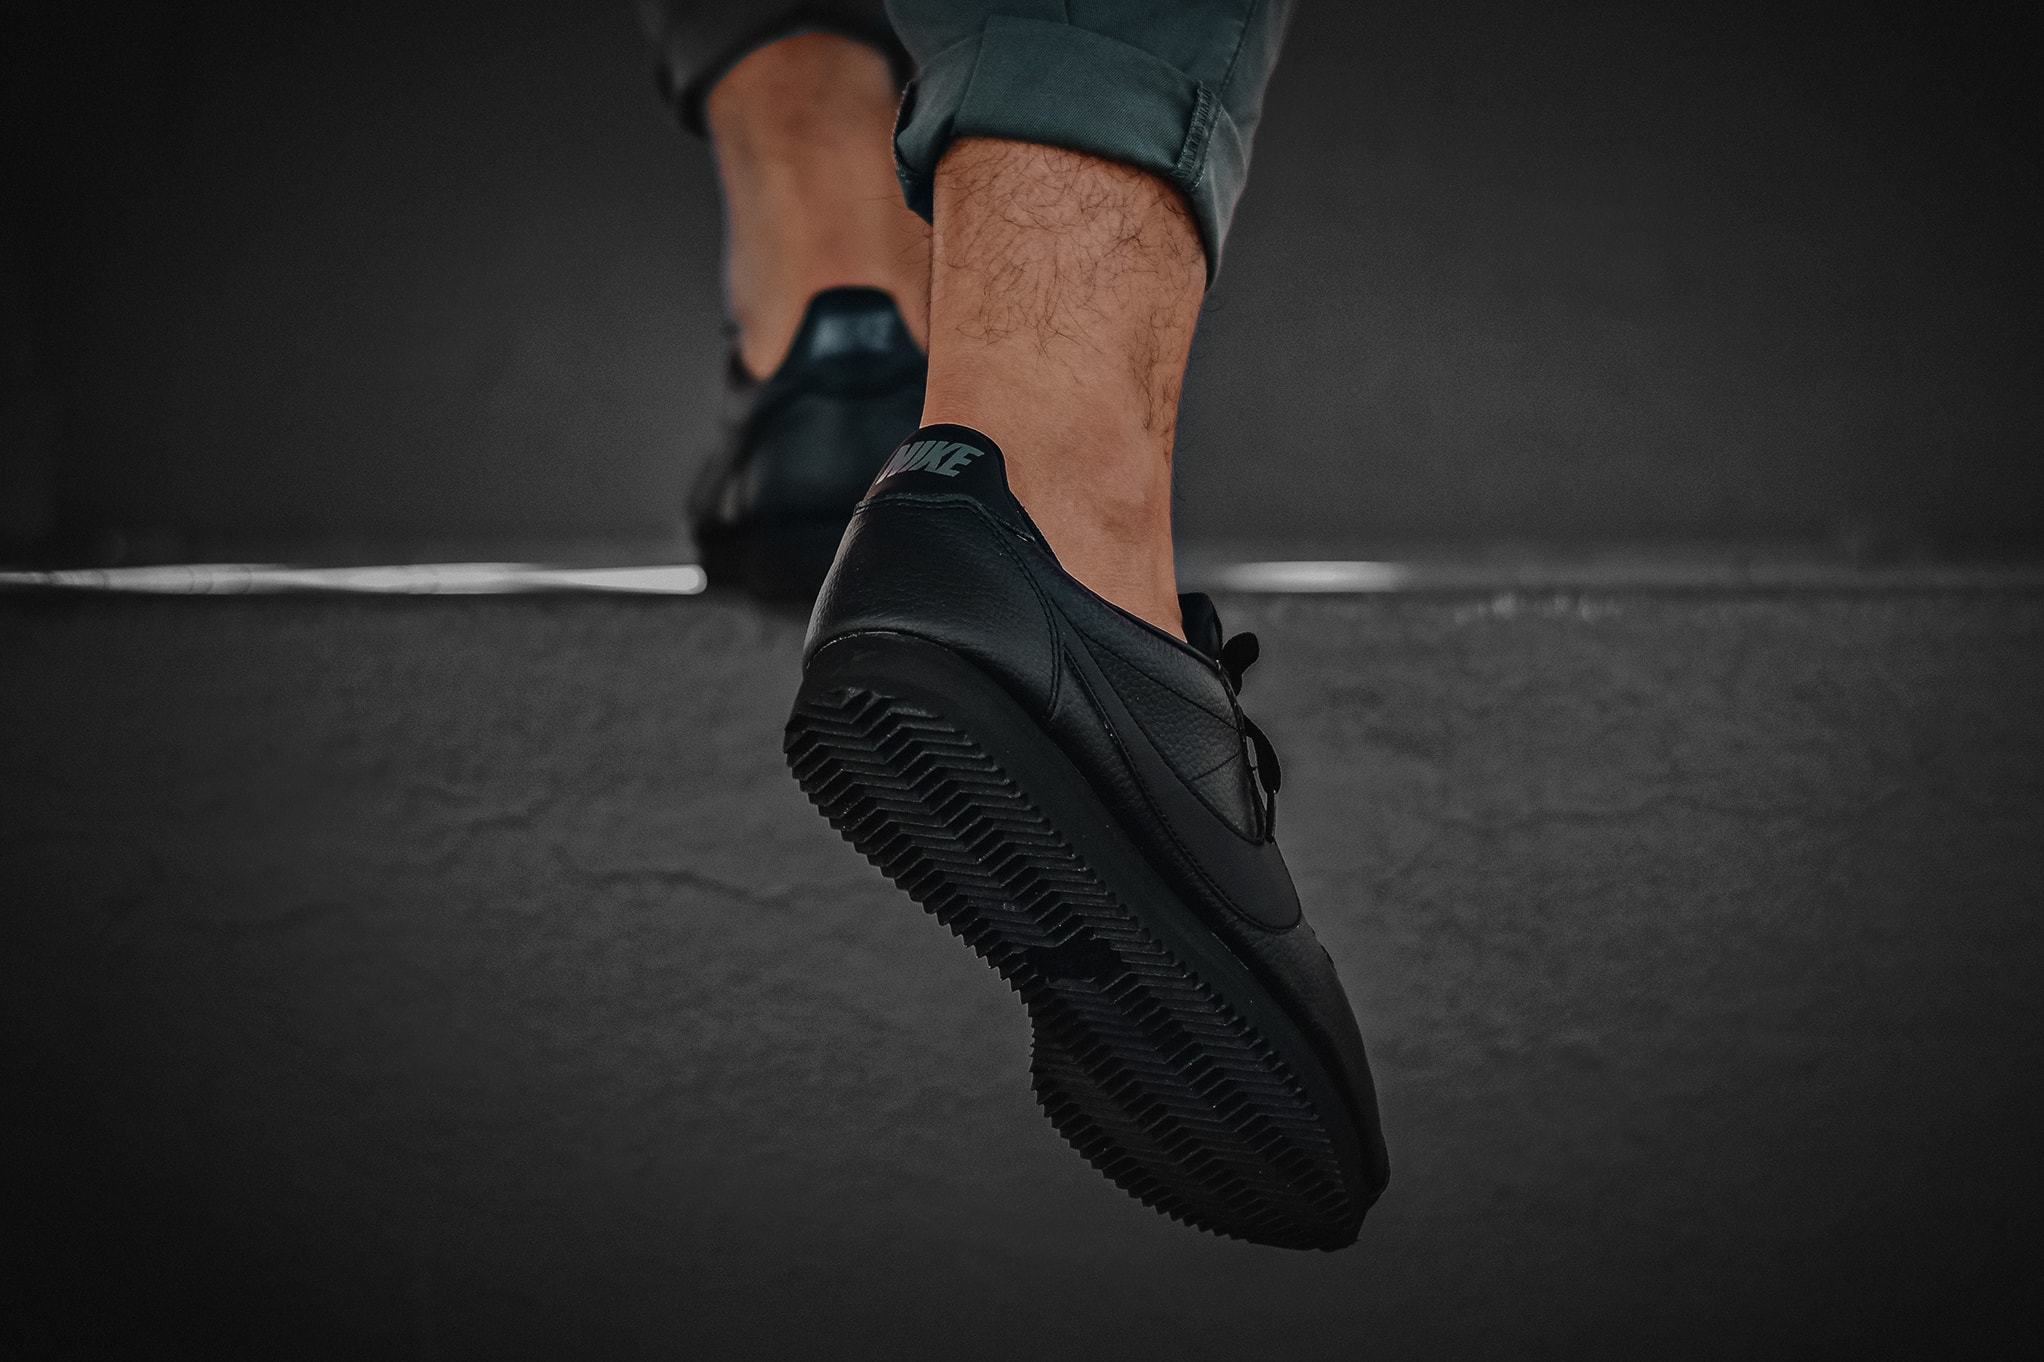 Nike Cortez Leather Triple Black On Feet Shoes Sneakers Footwear 2017 July Release Date Info